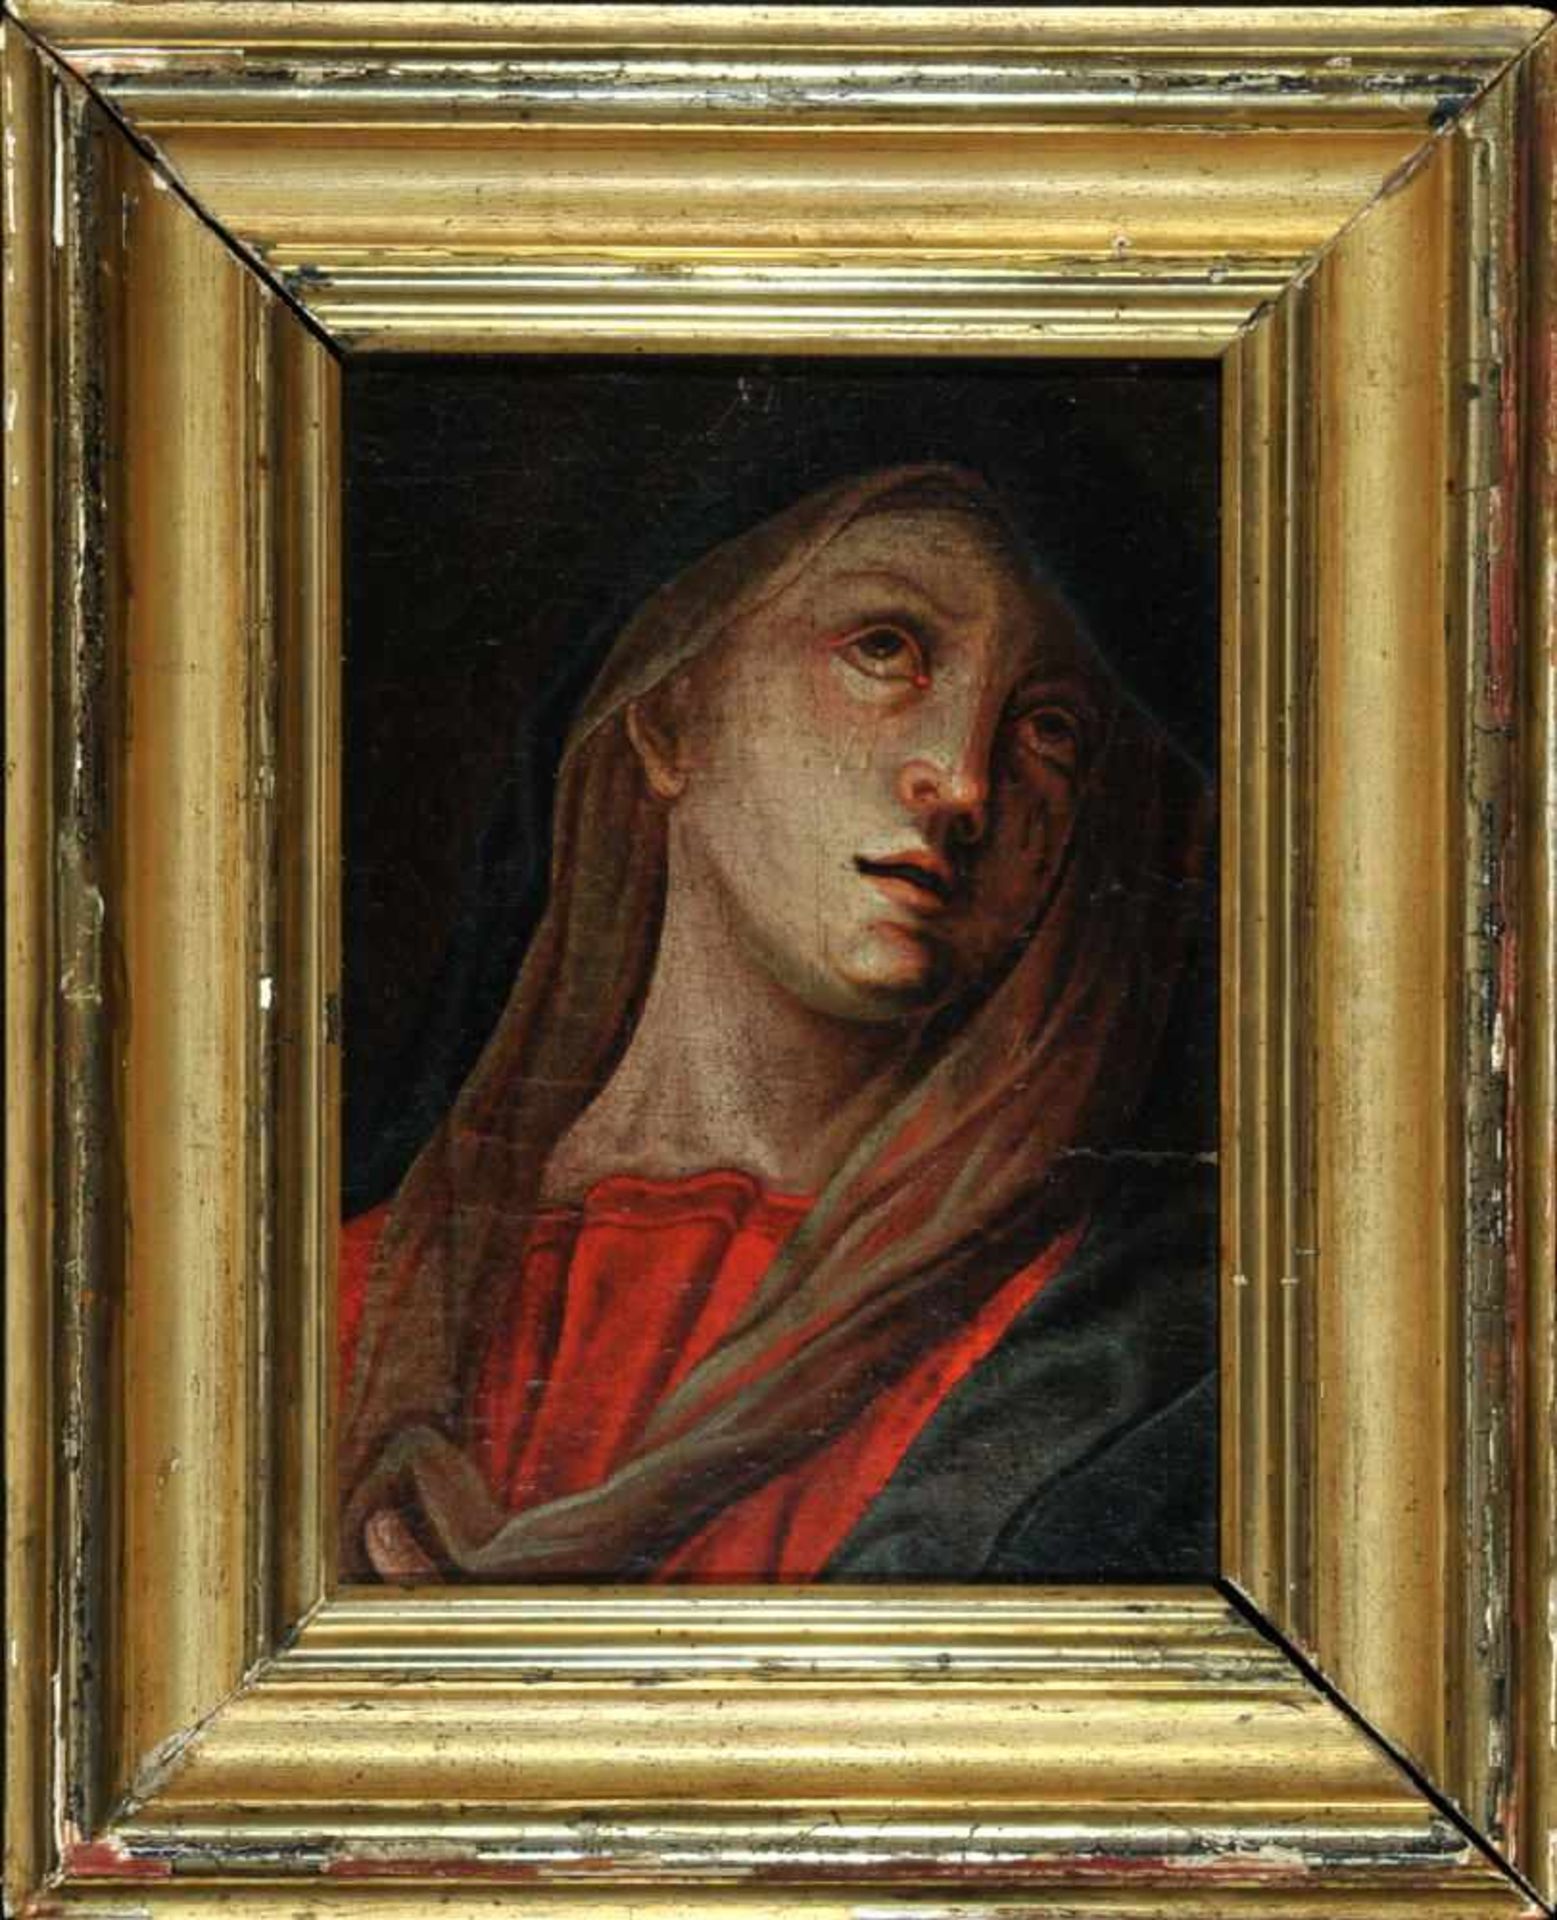 Bildnismaler des 18. Jh.Öl/Lwd auf Sperrholzplatte gez., 24 x 17,5 cm, " Betende Maria "